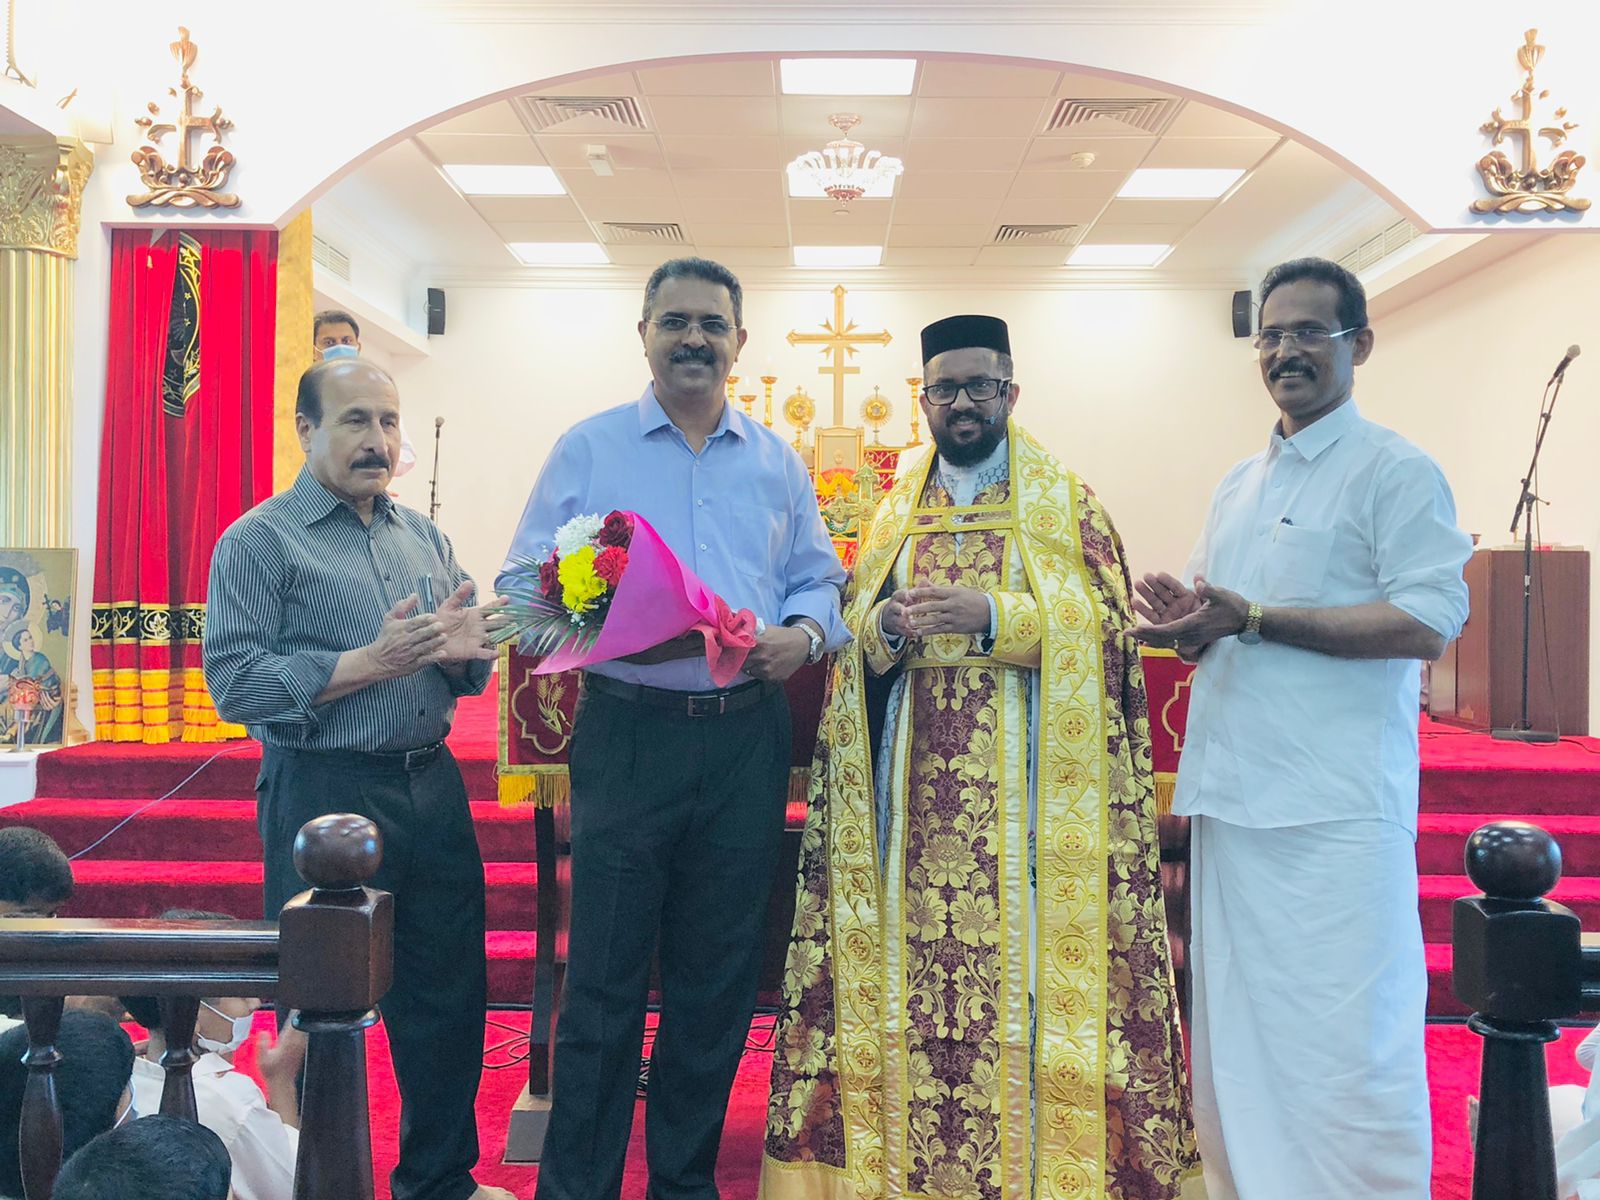 Felicitation to Mr Ninan Thomas Panickar being elected as the Brahmawar Diocesan Council Member